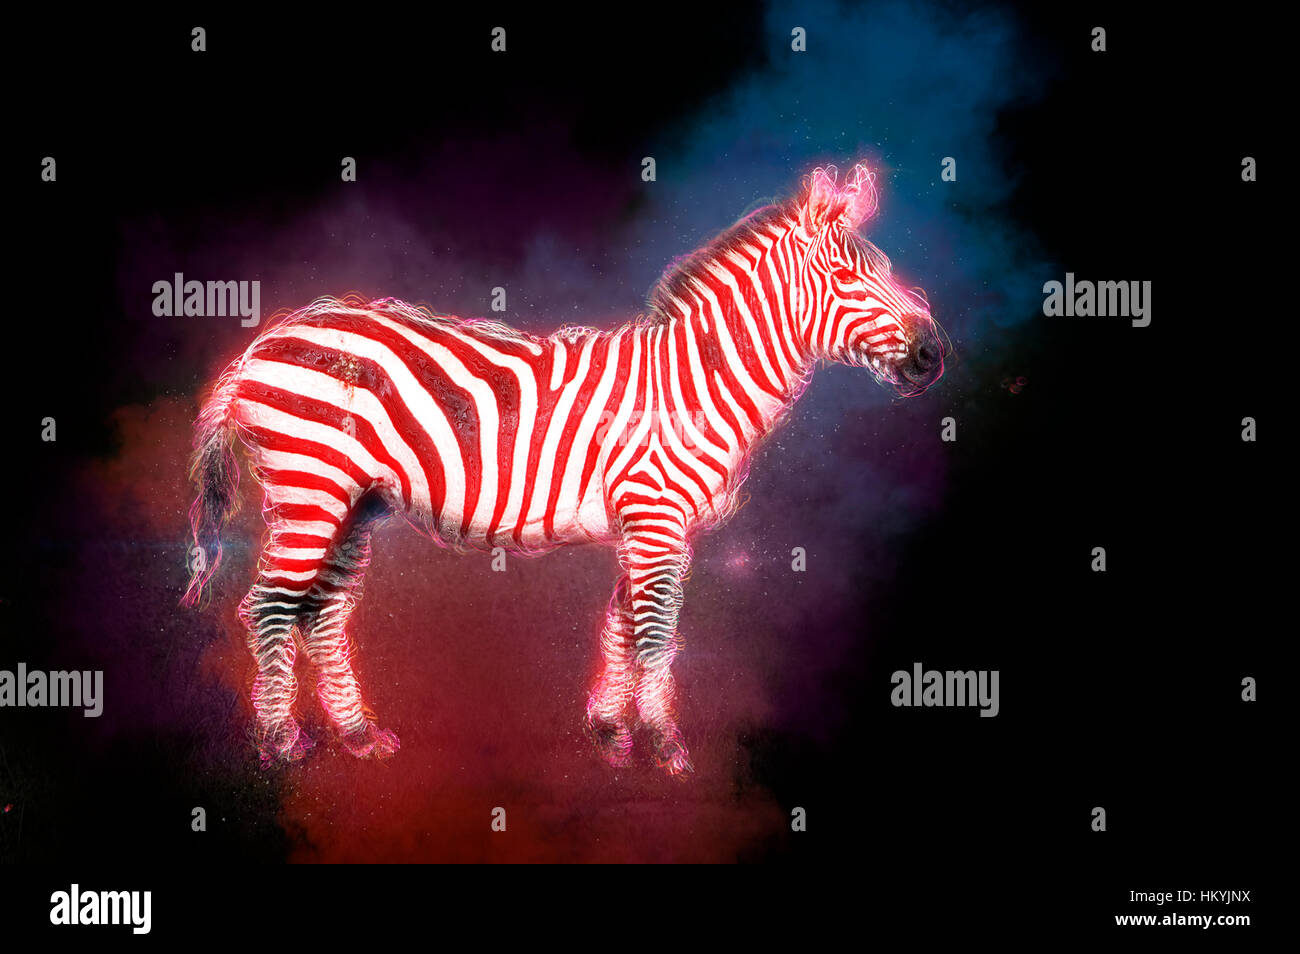 Digital Imagegewinn eine gemeinsame Zebra oder Ebenen Zebra (Equus Granti) fotografiert in Kenia, Masai Mara Stockfoto